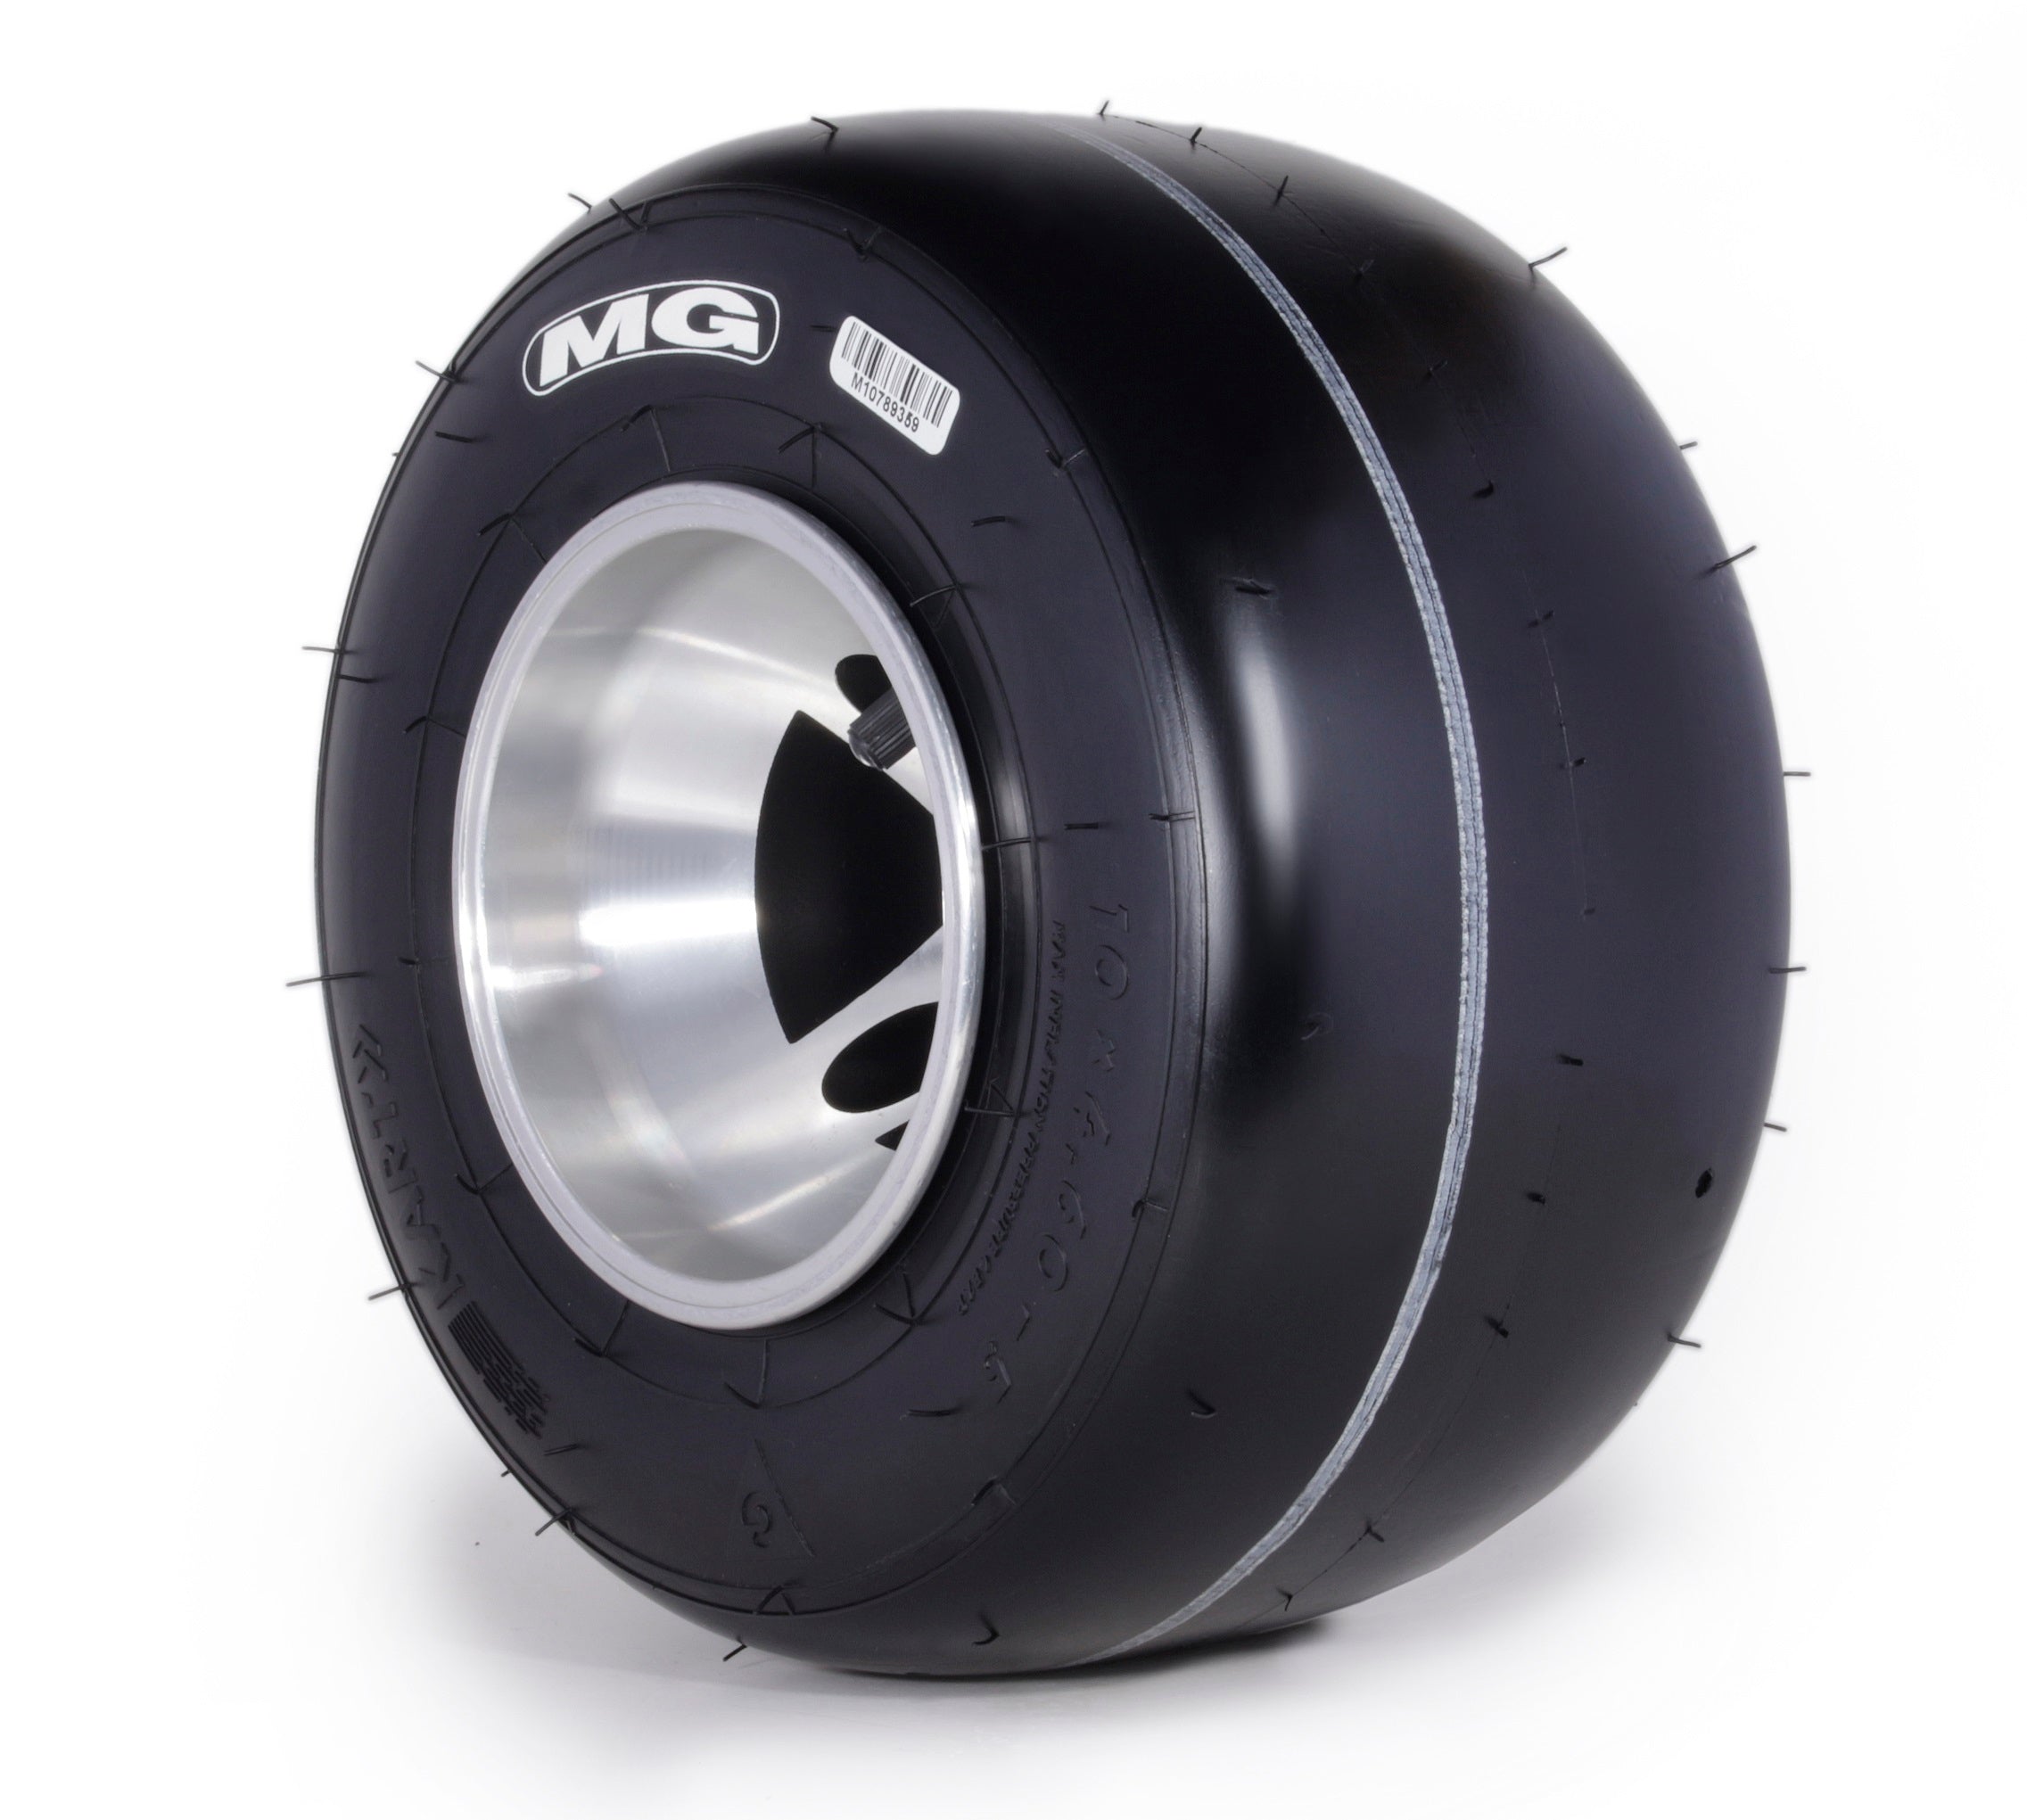 MG Tyre SI CIK/FIA 2020